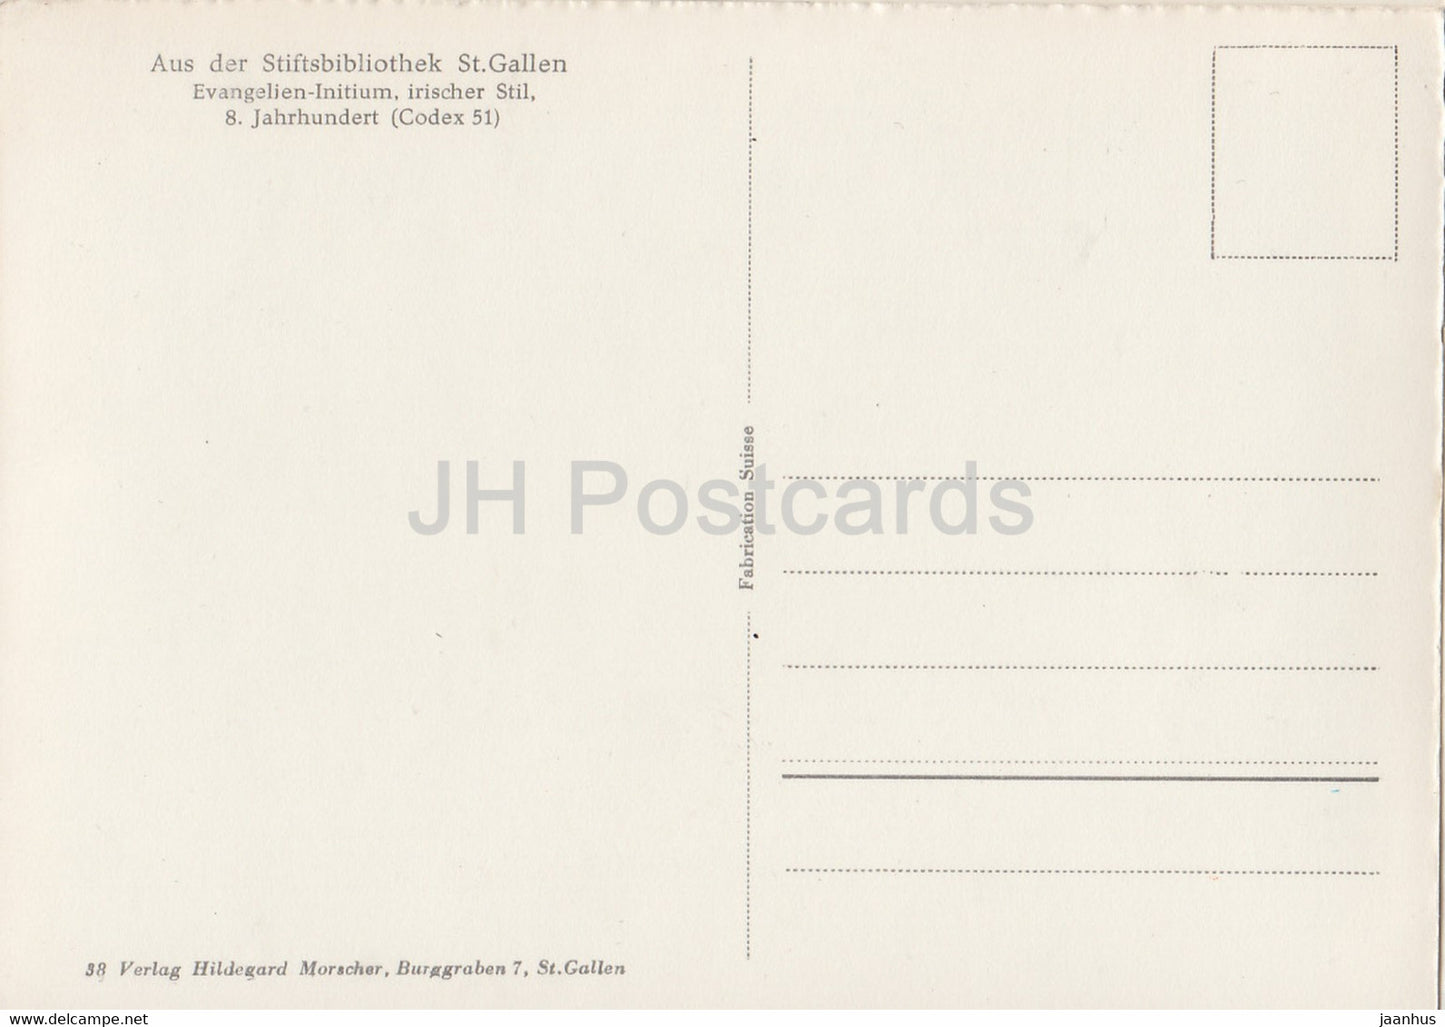 Evangelien Initium - Aus der Stiftsbibliothek St Gallen - library - old postcard - Switzerland - unused